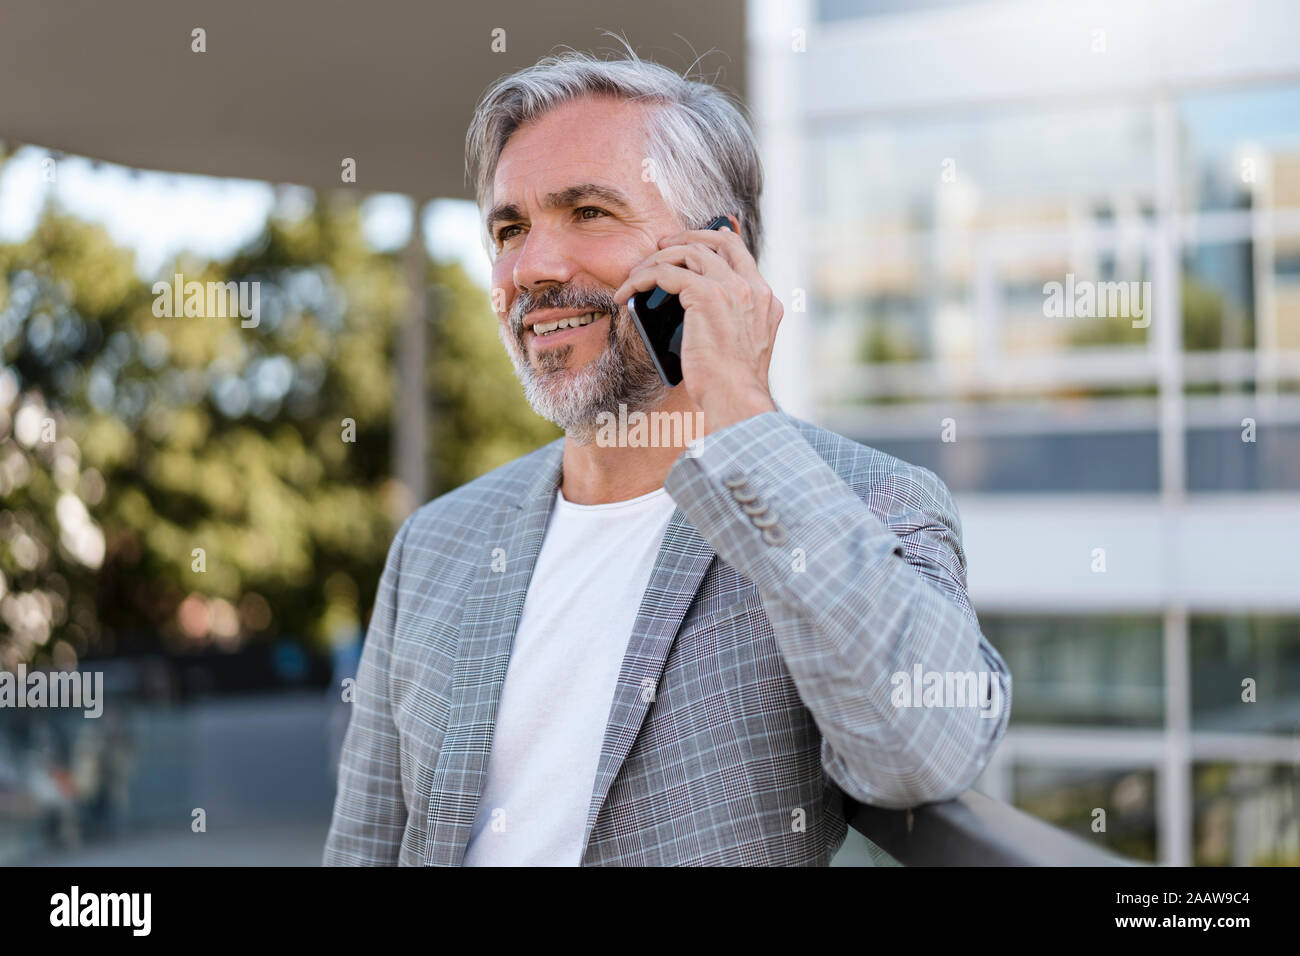 Portrait of mature businessman on the phone Banque D'Images